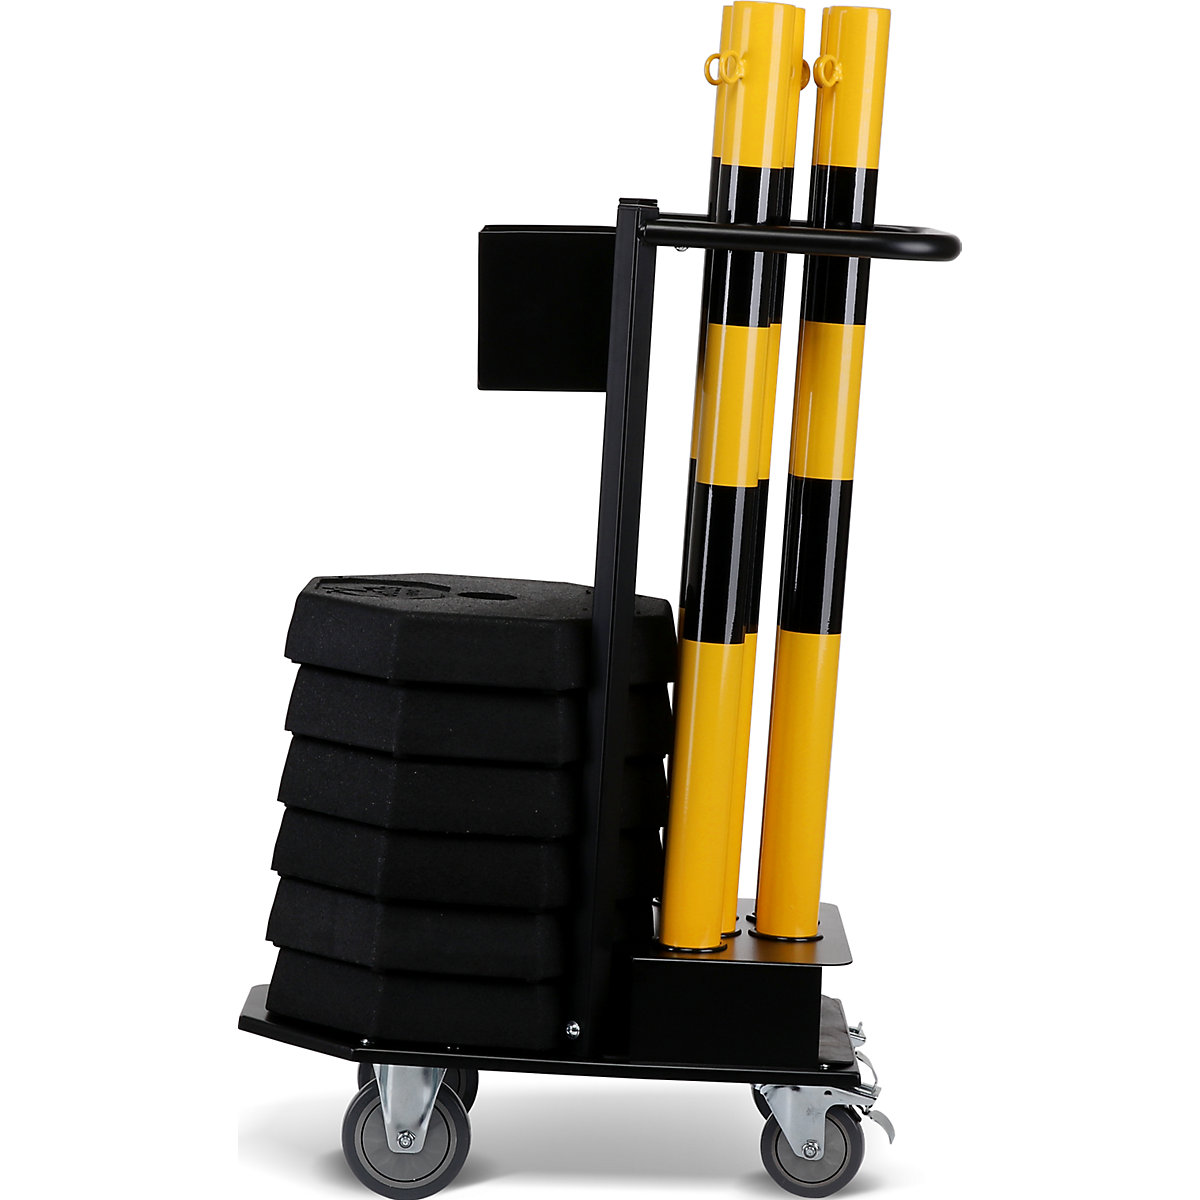 Komplet stalaka s lancem i transportnim kolicima, 6 karika, u žutoj / crnoj boji